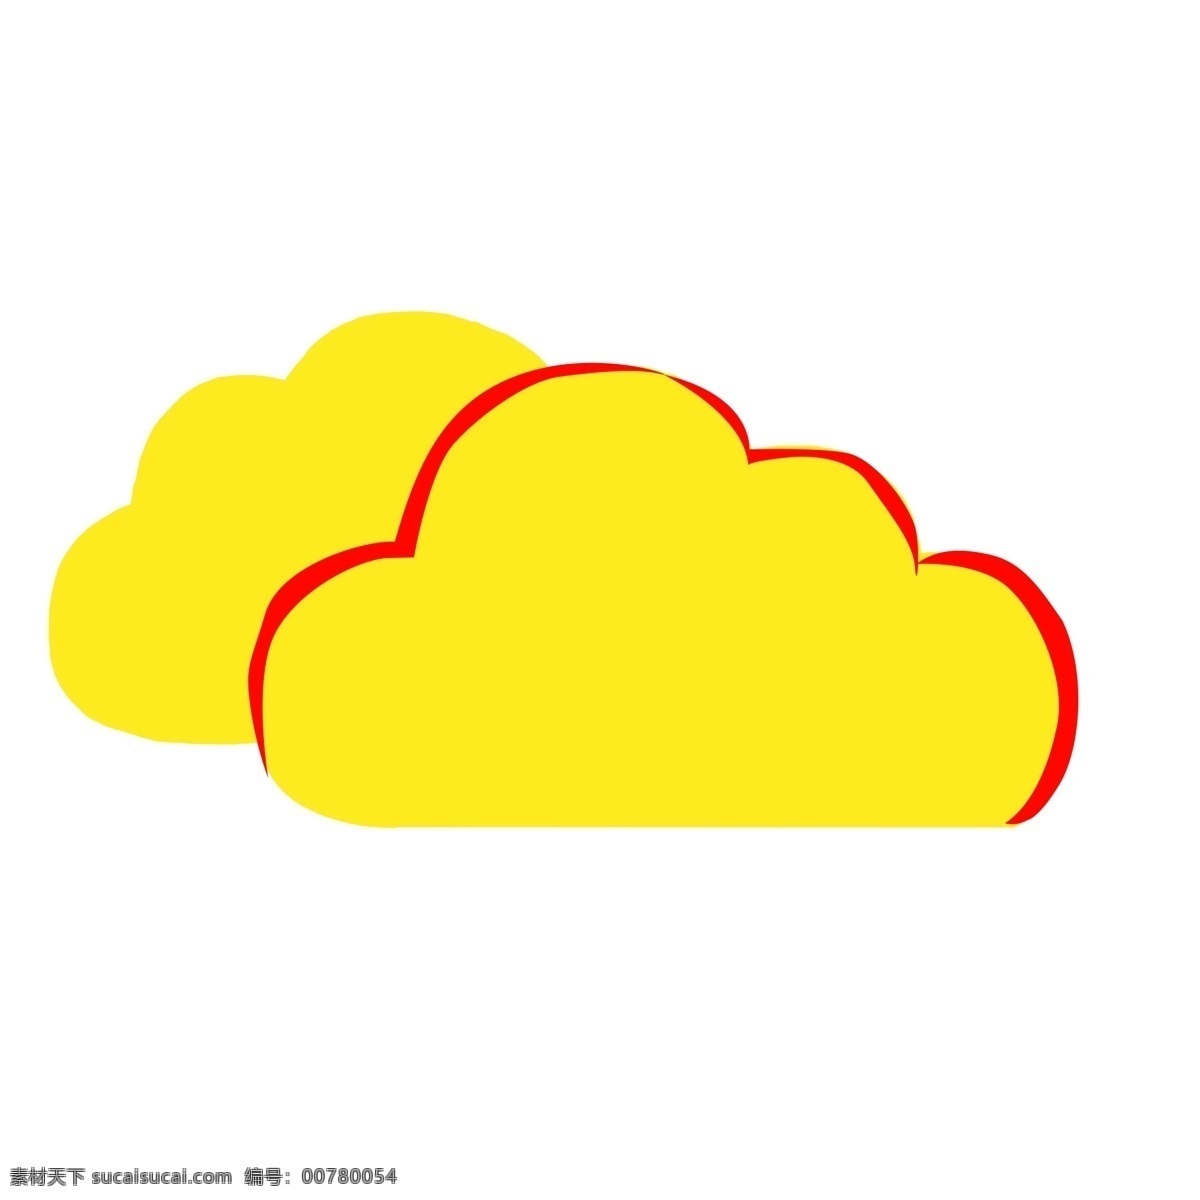 白云 装饰 图案 黄 云 标签 云朵 边框 图案装饰 卡通手绘风 多边形 可爱风 小物件 小标签 商标 装饰物 黄云标签